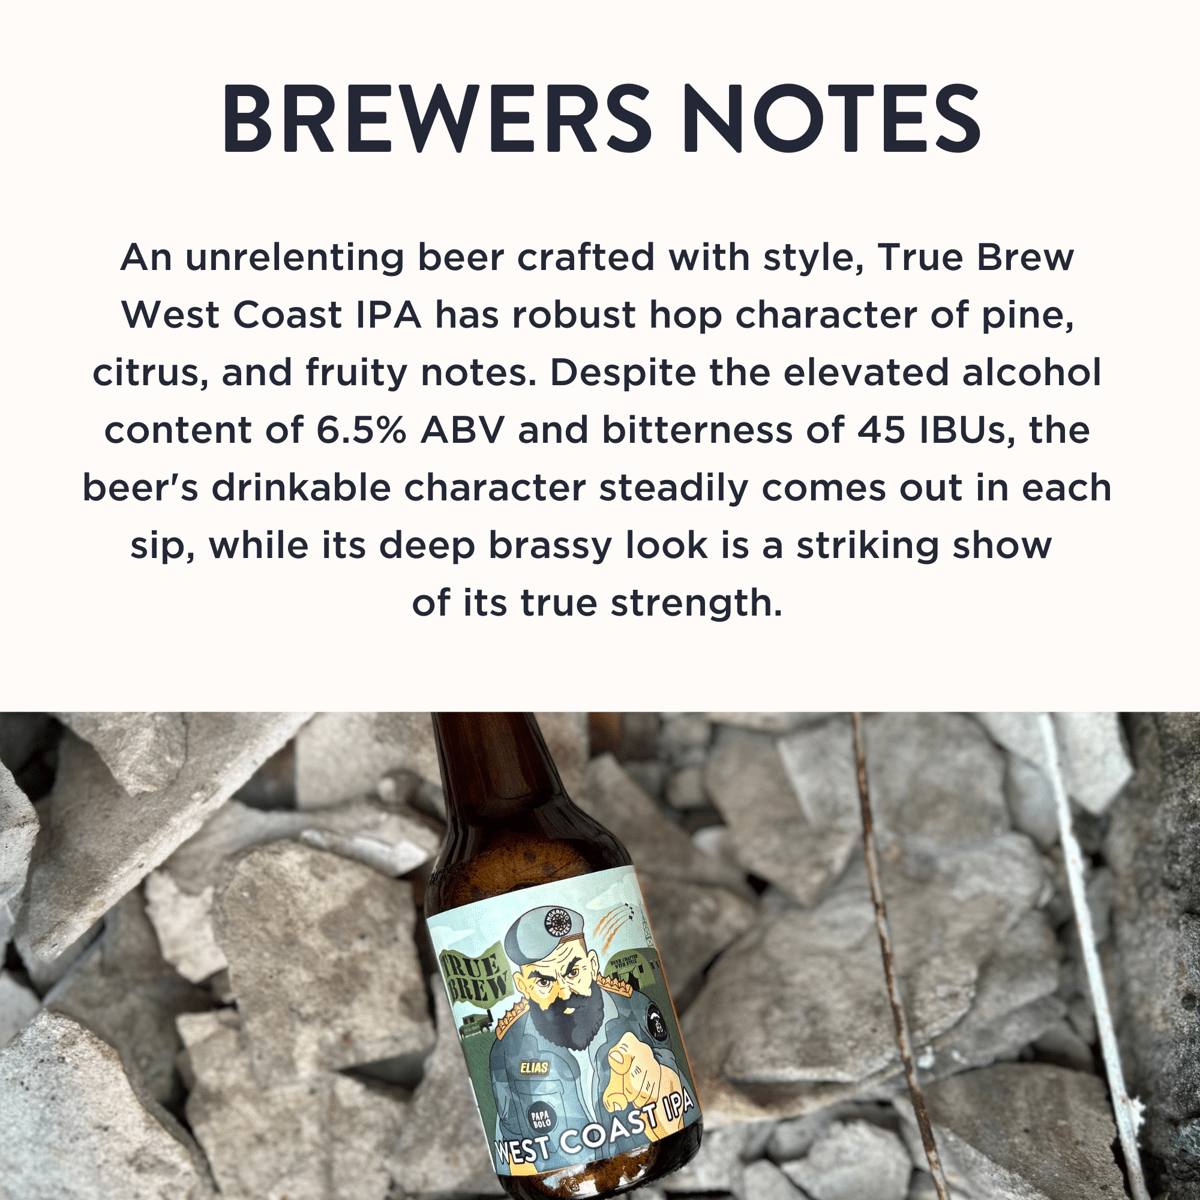 True Brew West Coast IPA - Brewer's Note